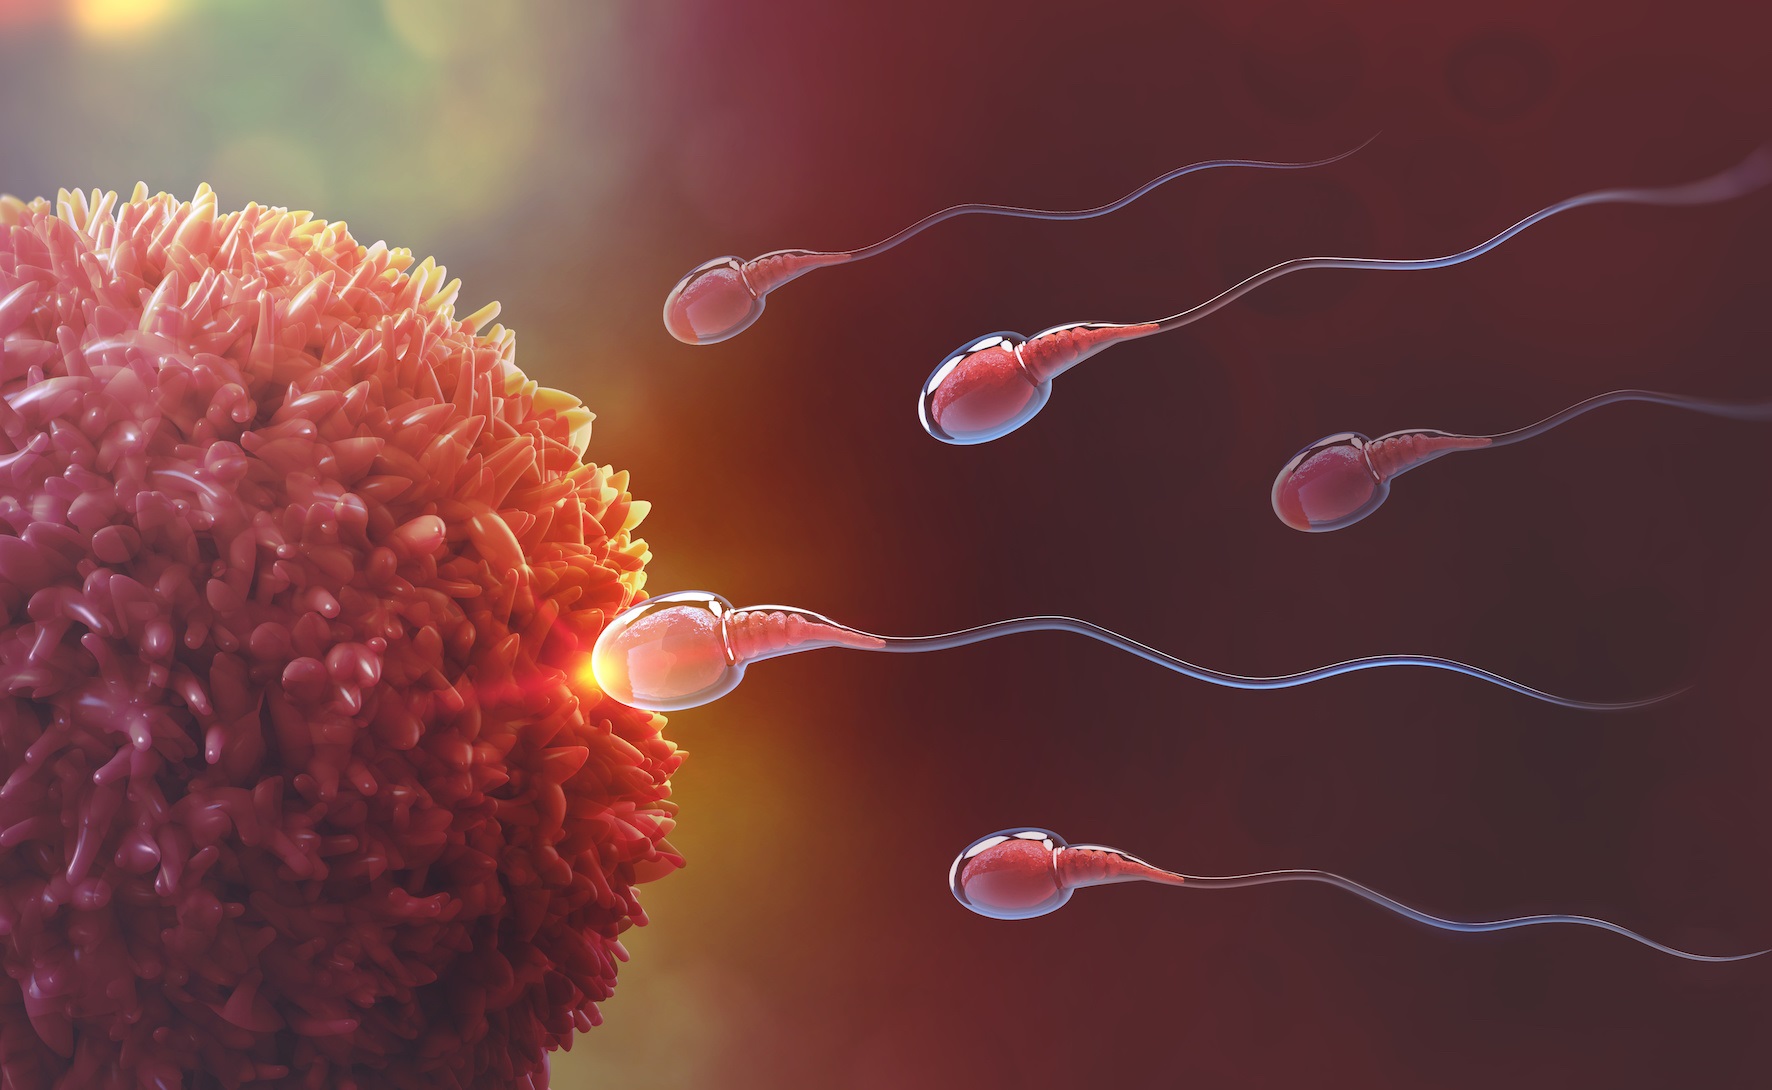 La falta de este gen provoca una enfermedad llamada oligoastenoteratospermia u OAT, que afecta a la concentración, la movilidad y la morfología de los espermatozoides y evita que éstos puedan fecundar óvulos, causando así infertilidad en los hombres.